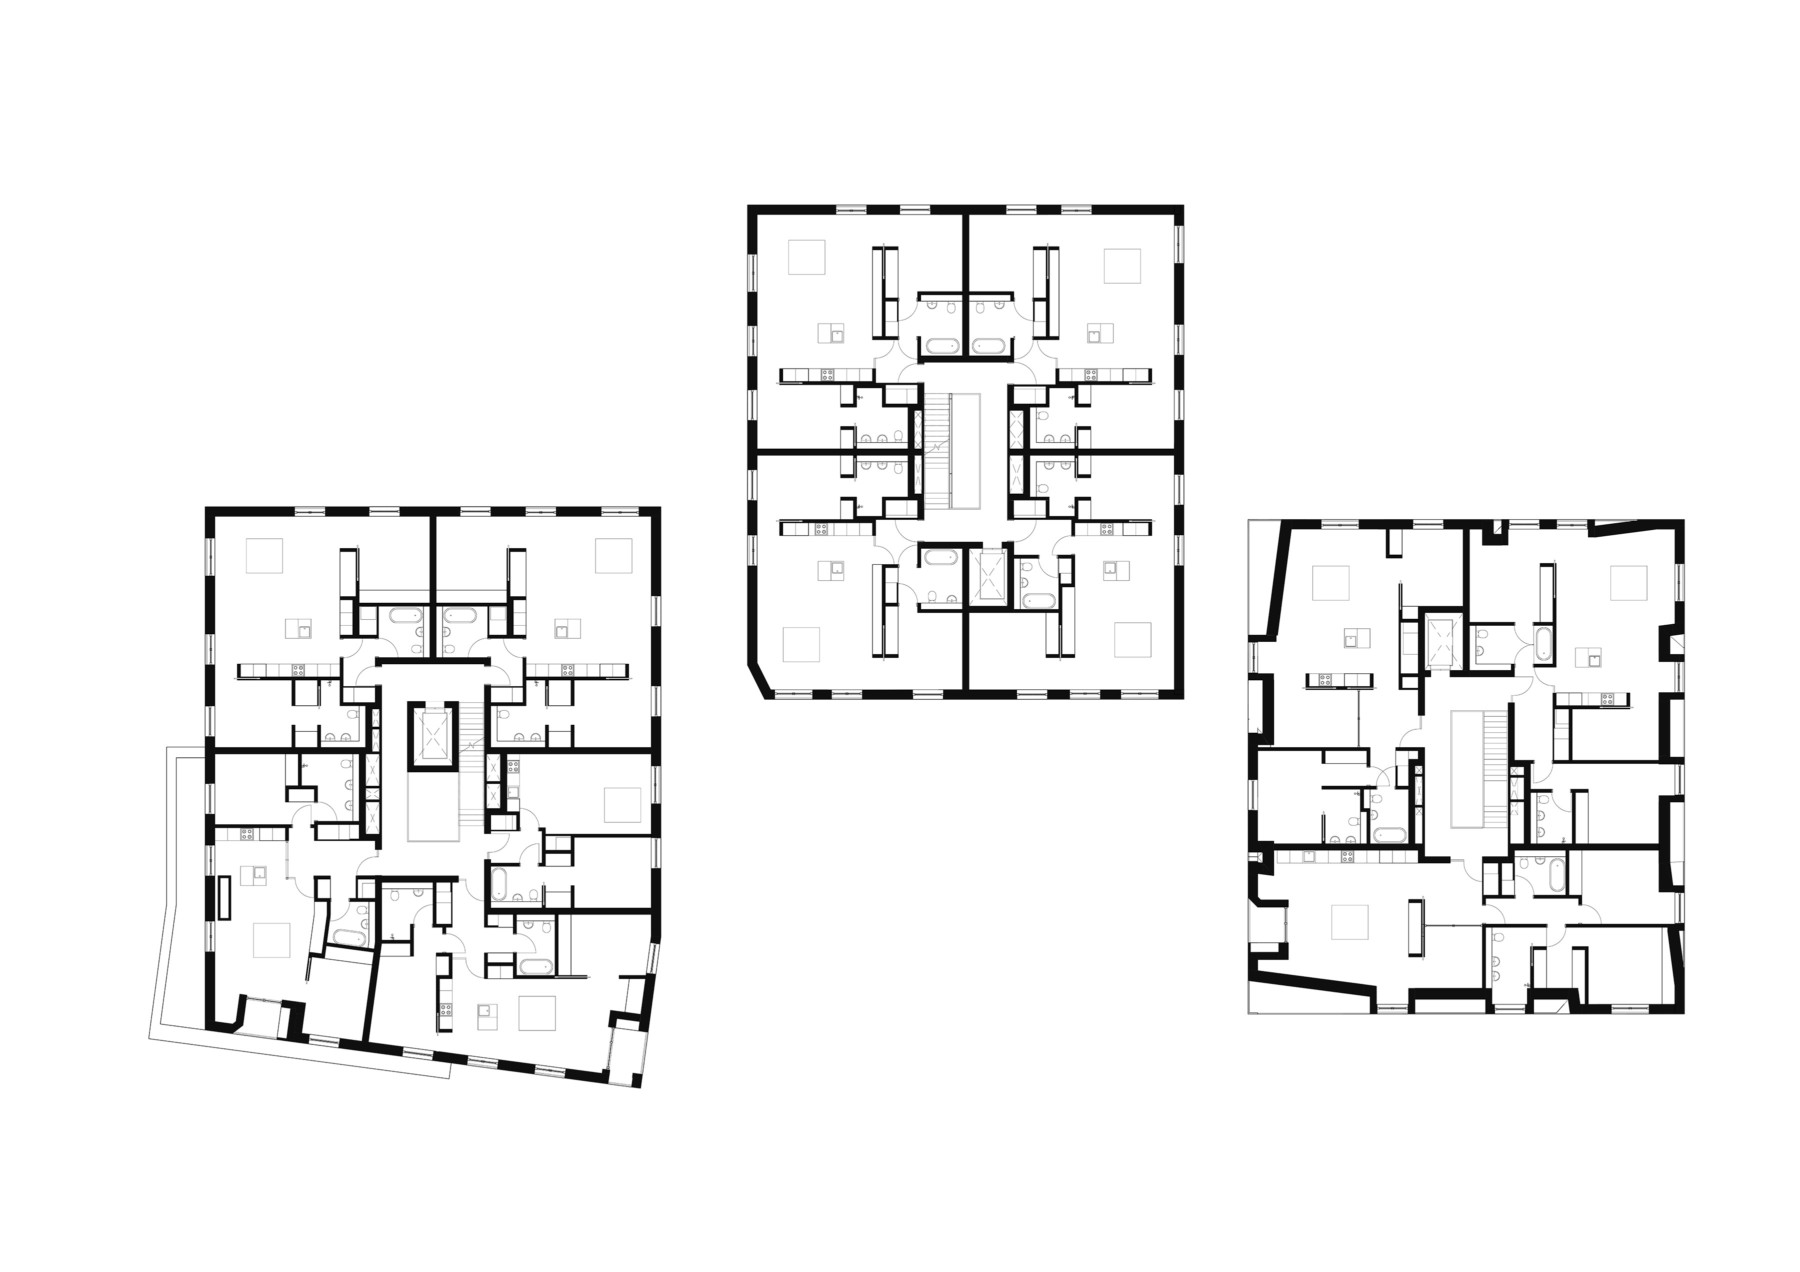 Typical upper floor plan